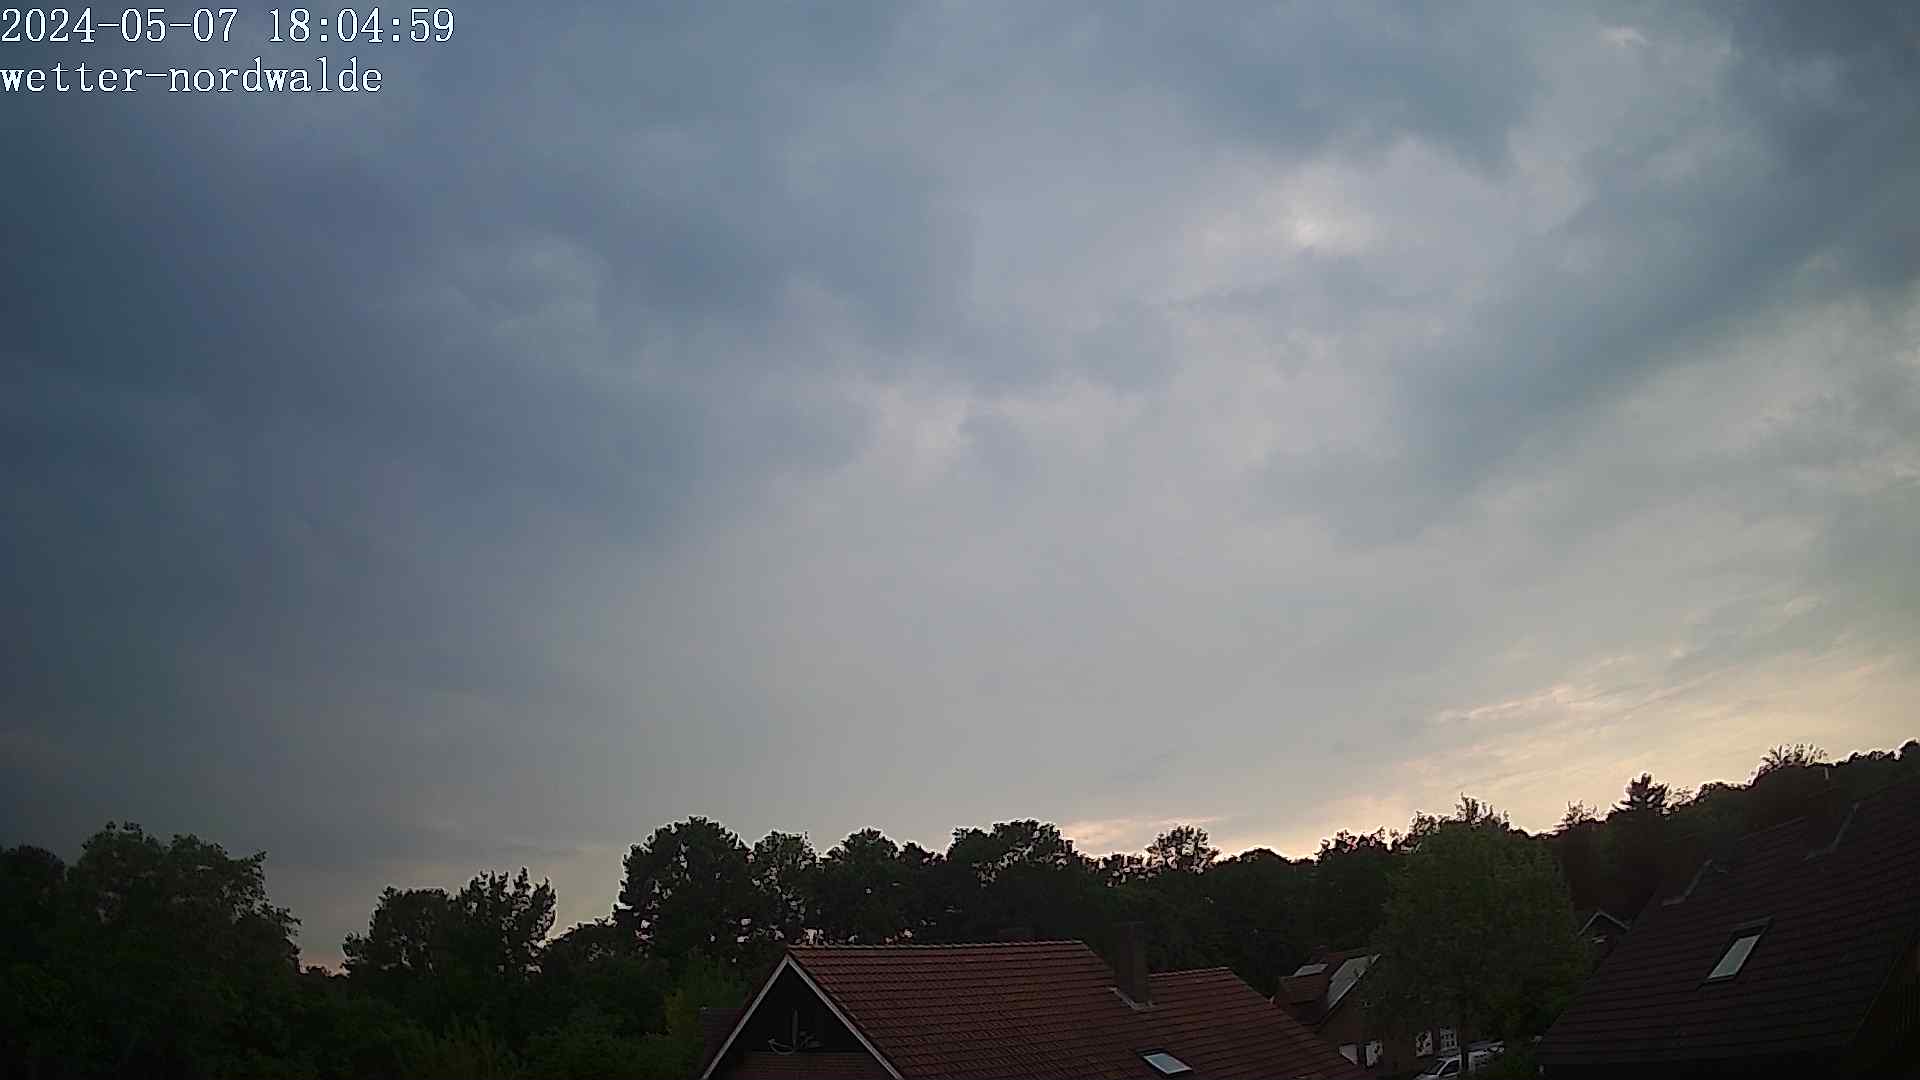 Webcam Wetter-Nordwalde